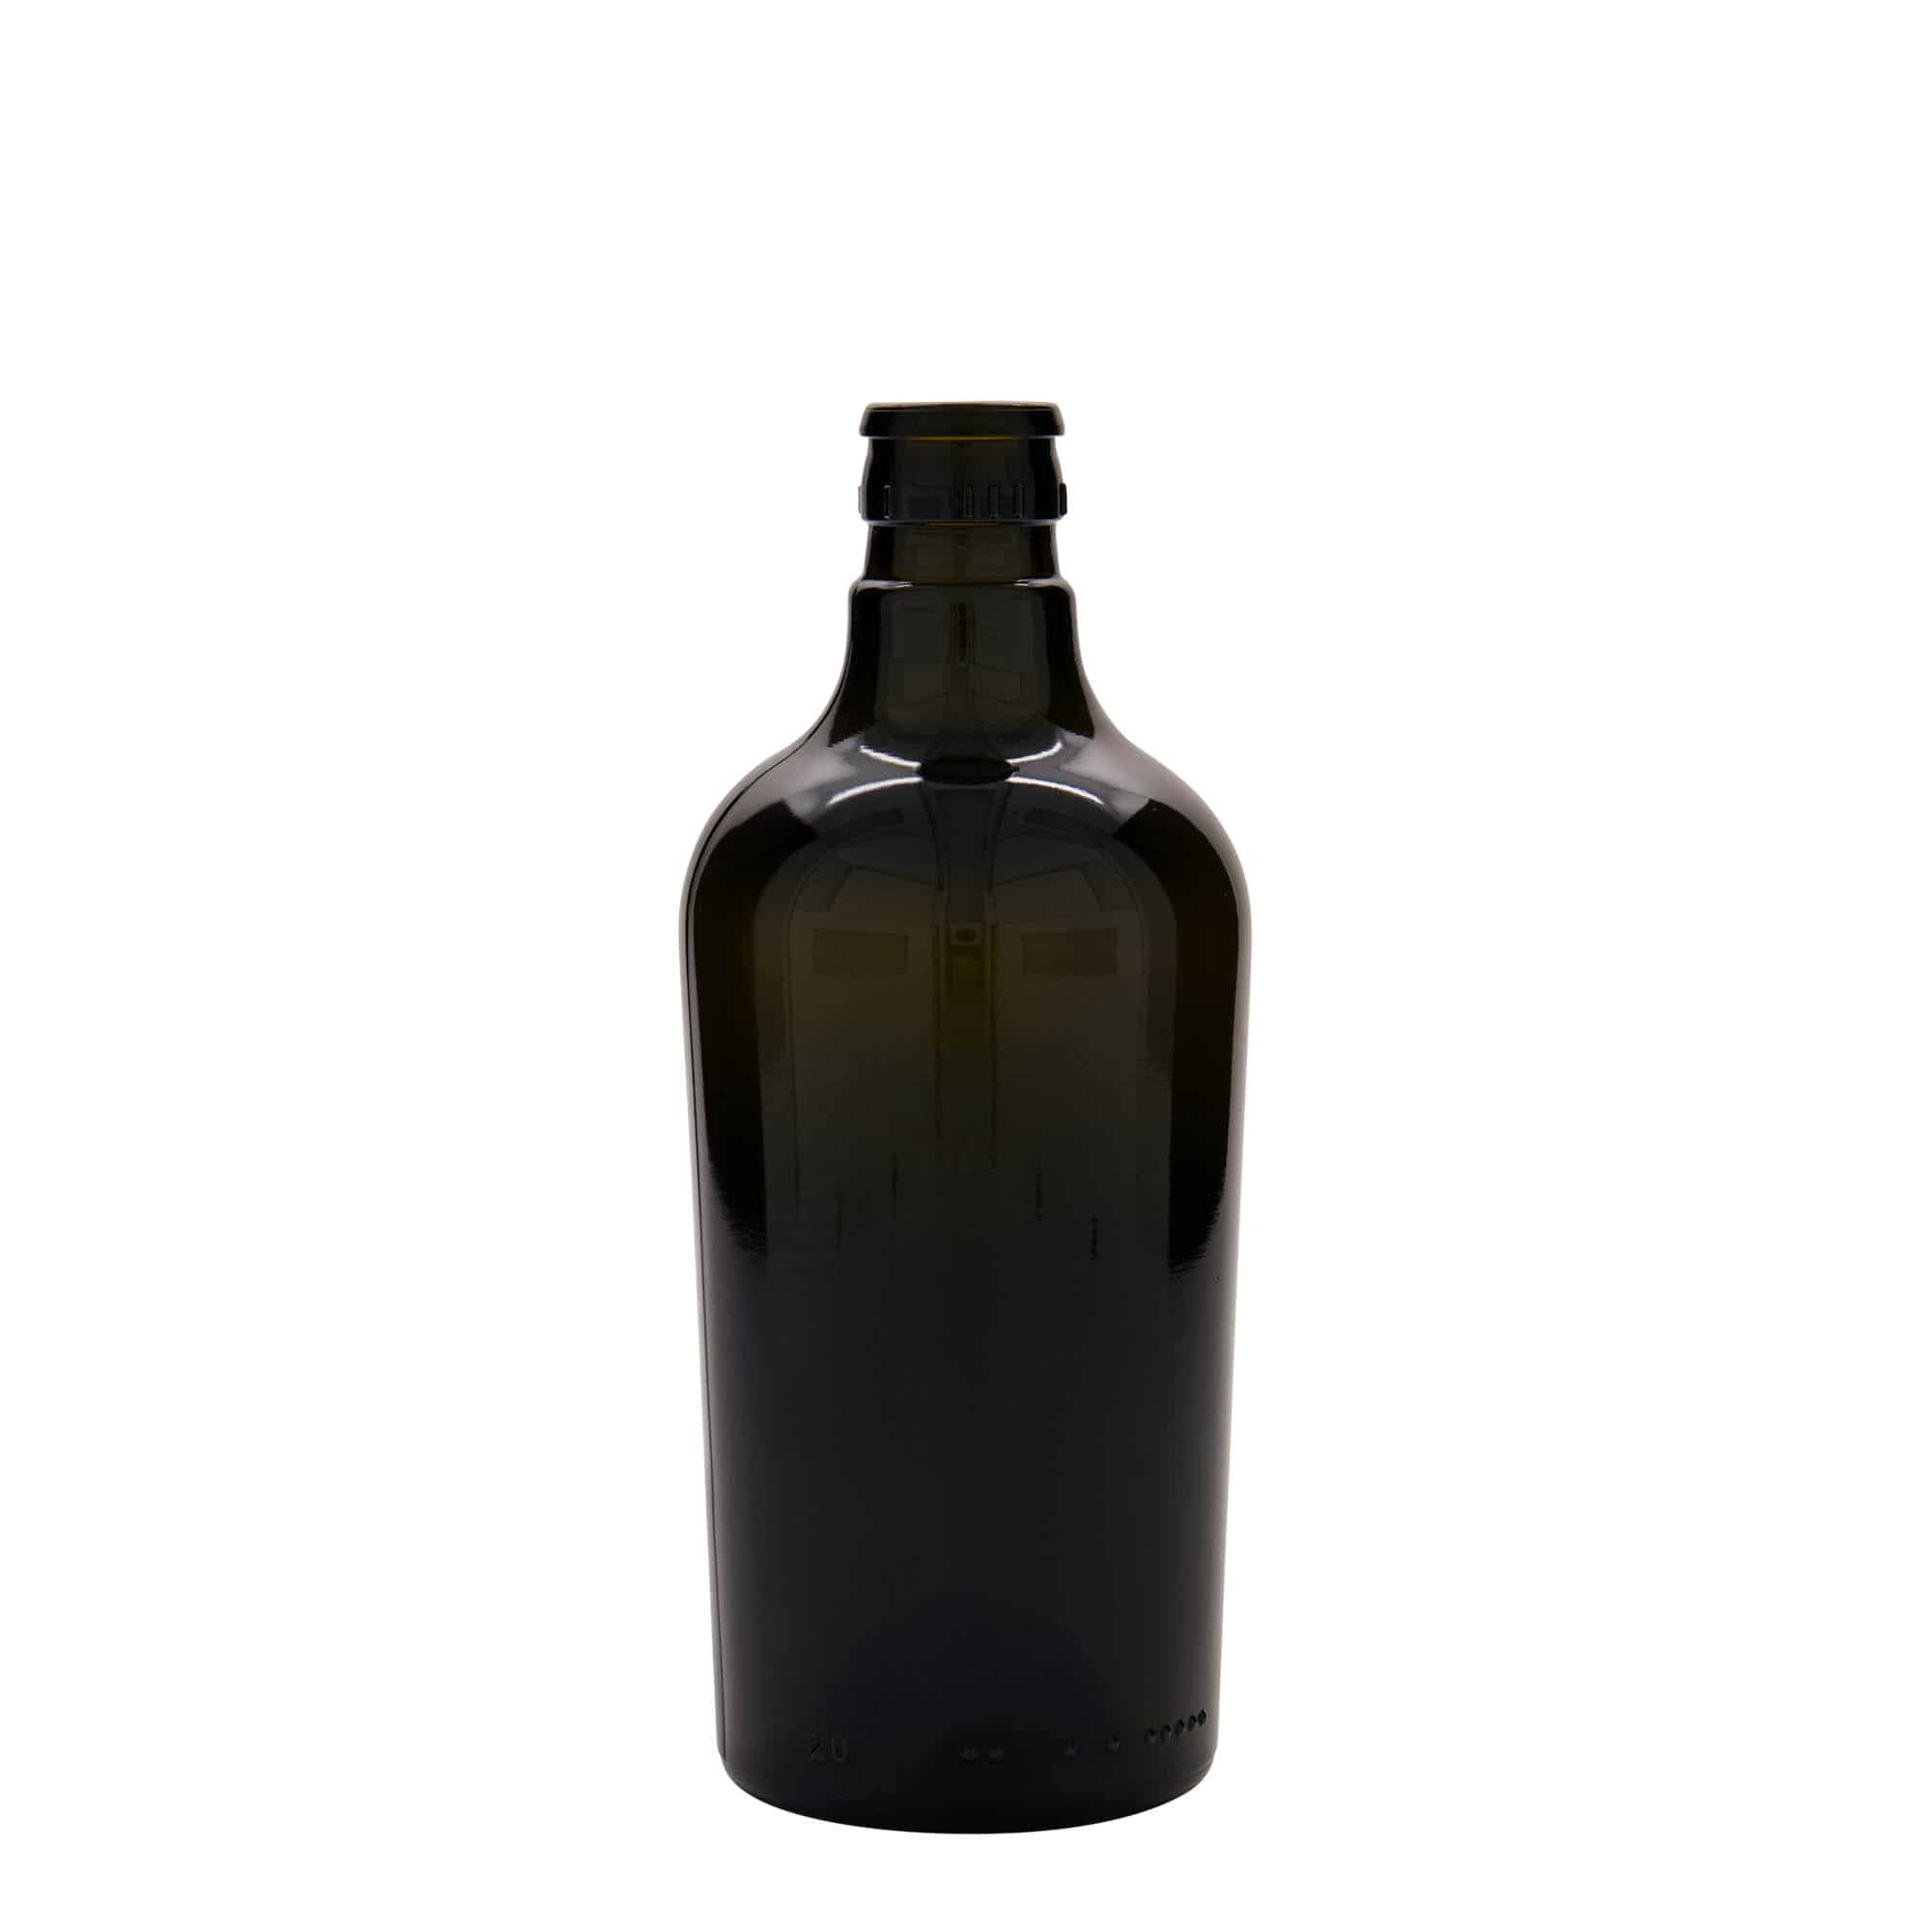 500 ml butelka na ocet/olej 'Oleum', szkło, kolor zielony antyczny, zamknięcie: DOP